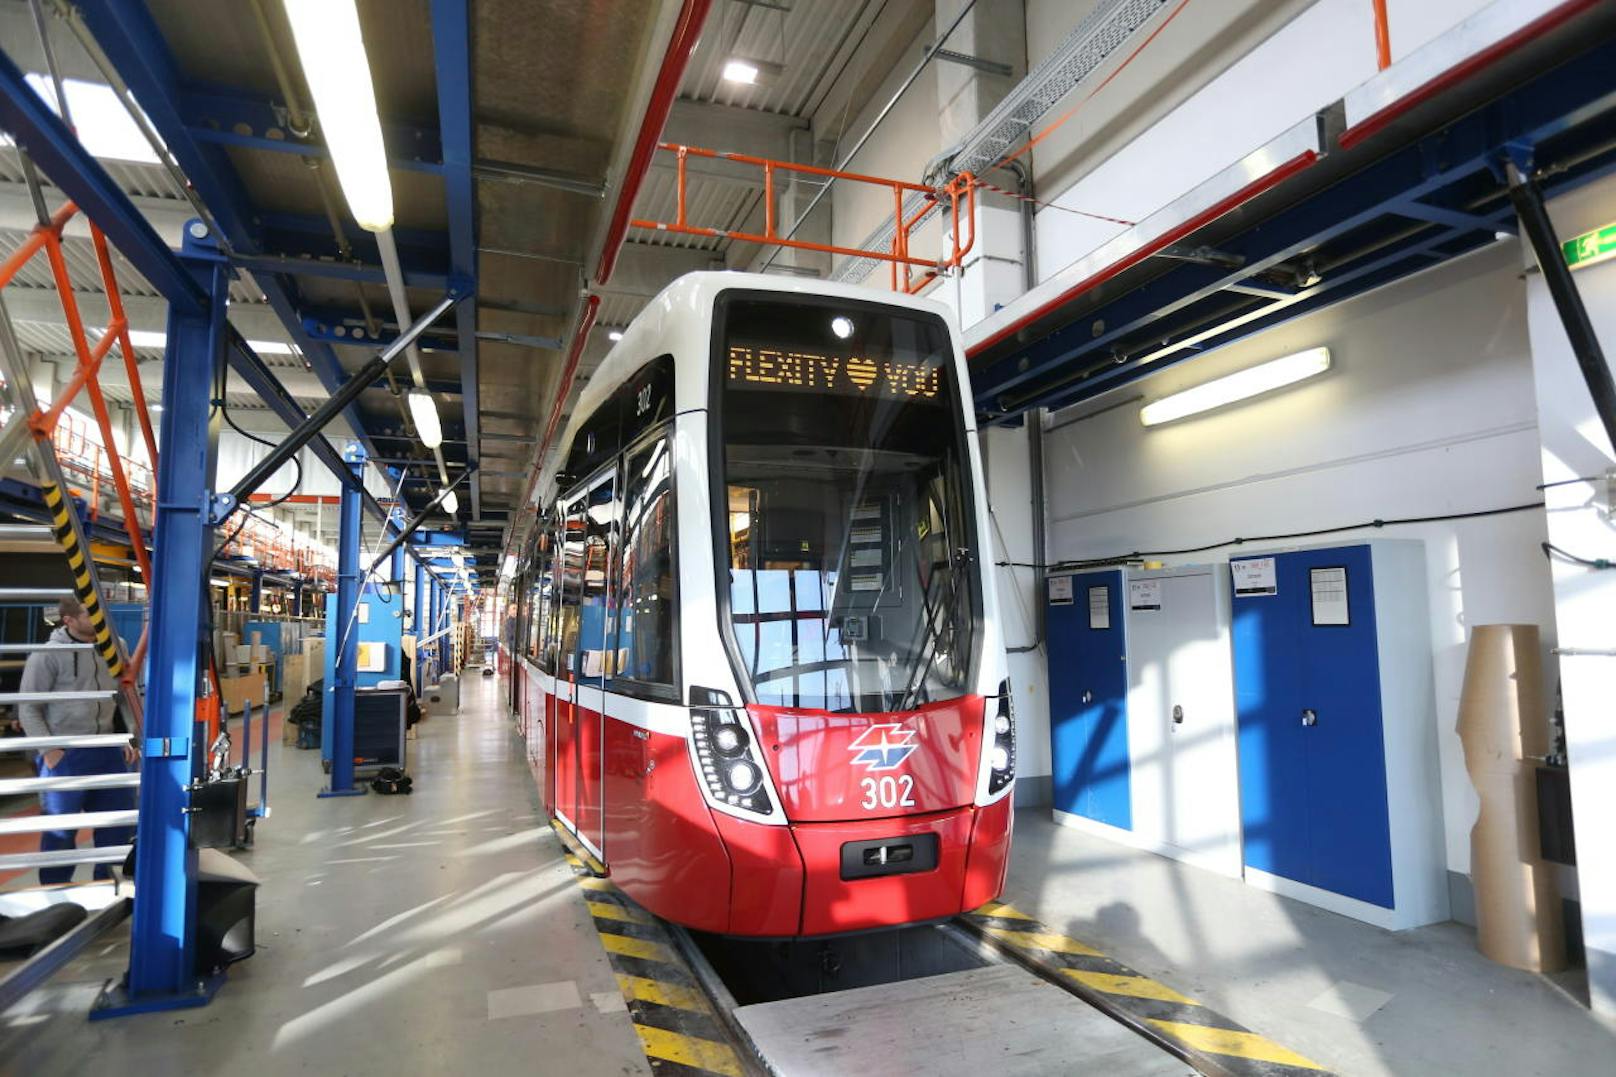 Ab Ende 2018 wird die Straßenbahn in Wien ihre Kurven drehen. Bei einer Gesamtlänge von 34 Metern bietet der Zug Platz für 211 Fahrgäste. Darin inkludiert sind zwei Rollstuhlplätze und insgesamt 62 Sitzplätze.